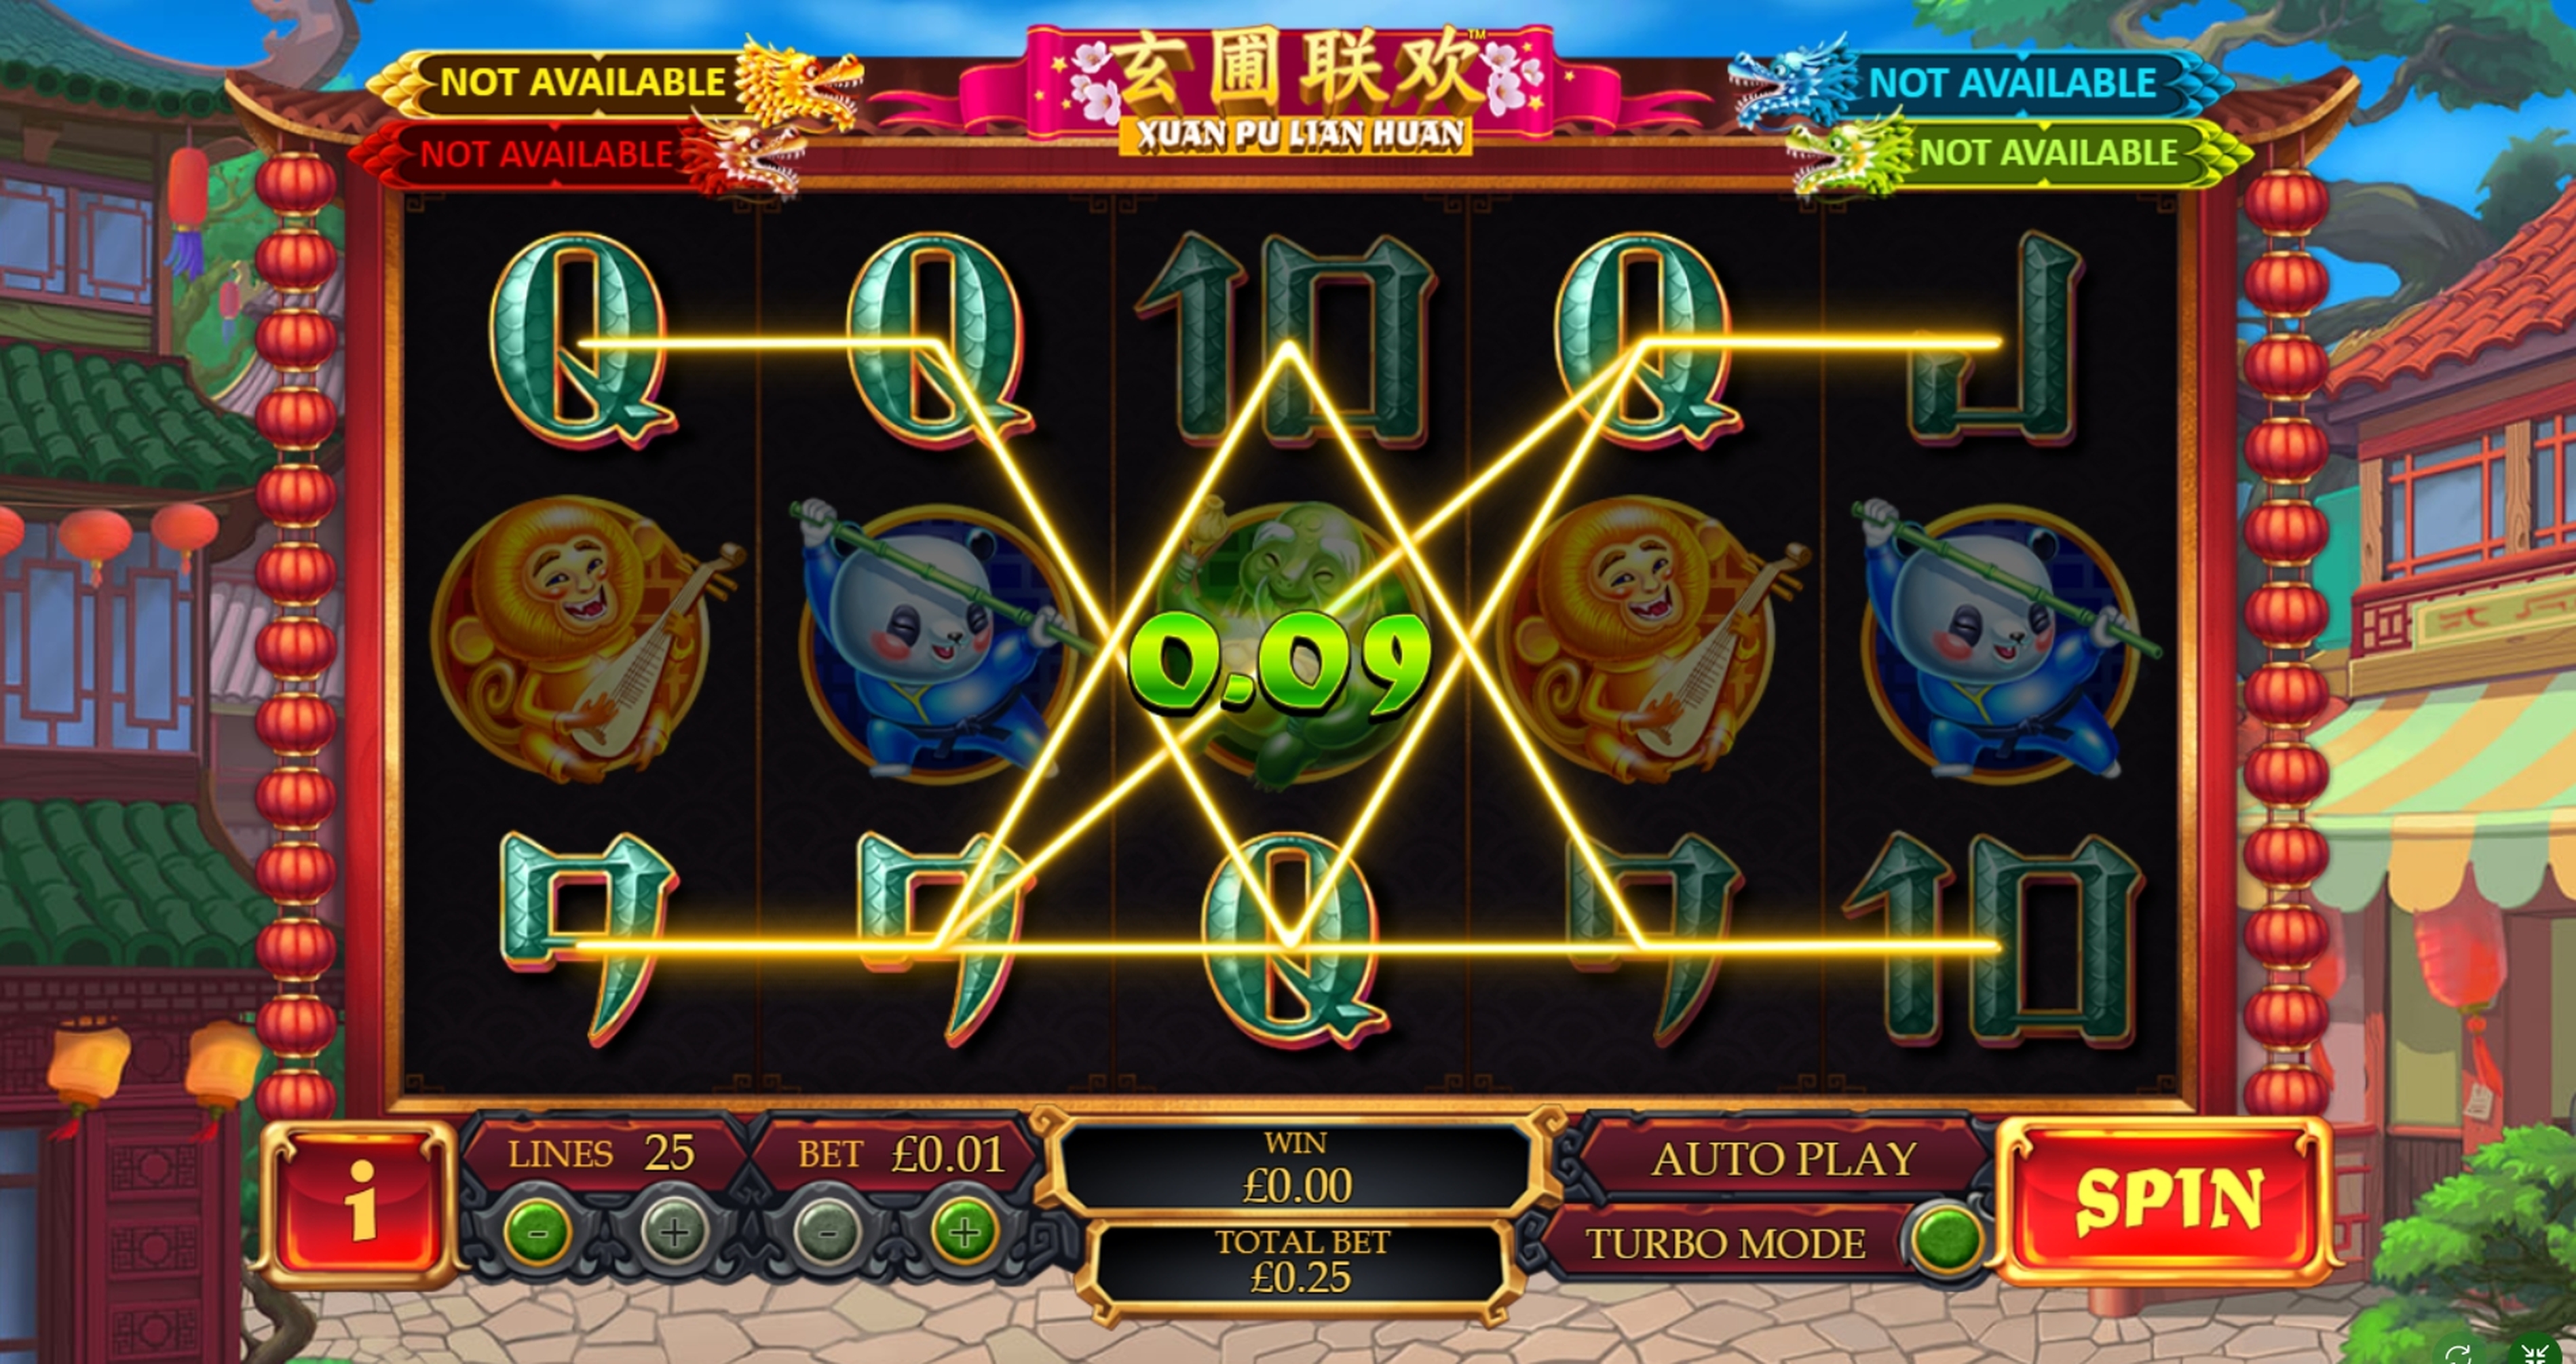 Win Money in Xuan Pu Lian Huan Free Slot Game by Playtech